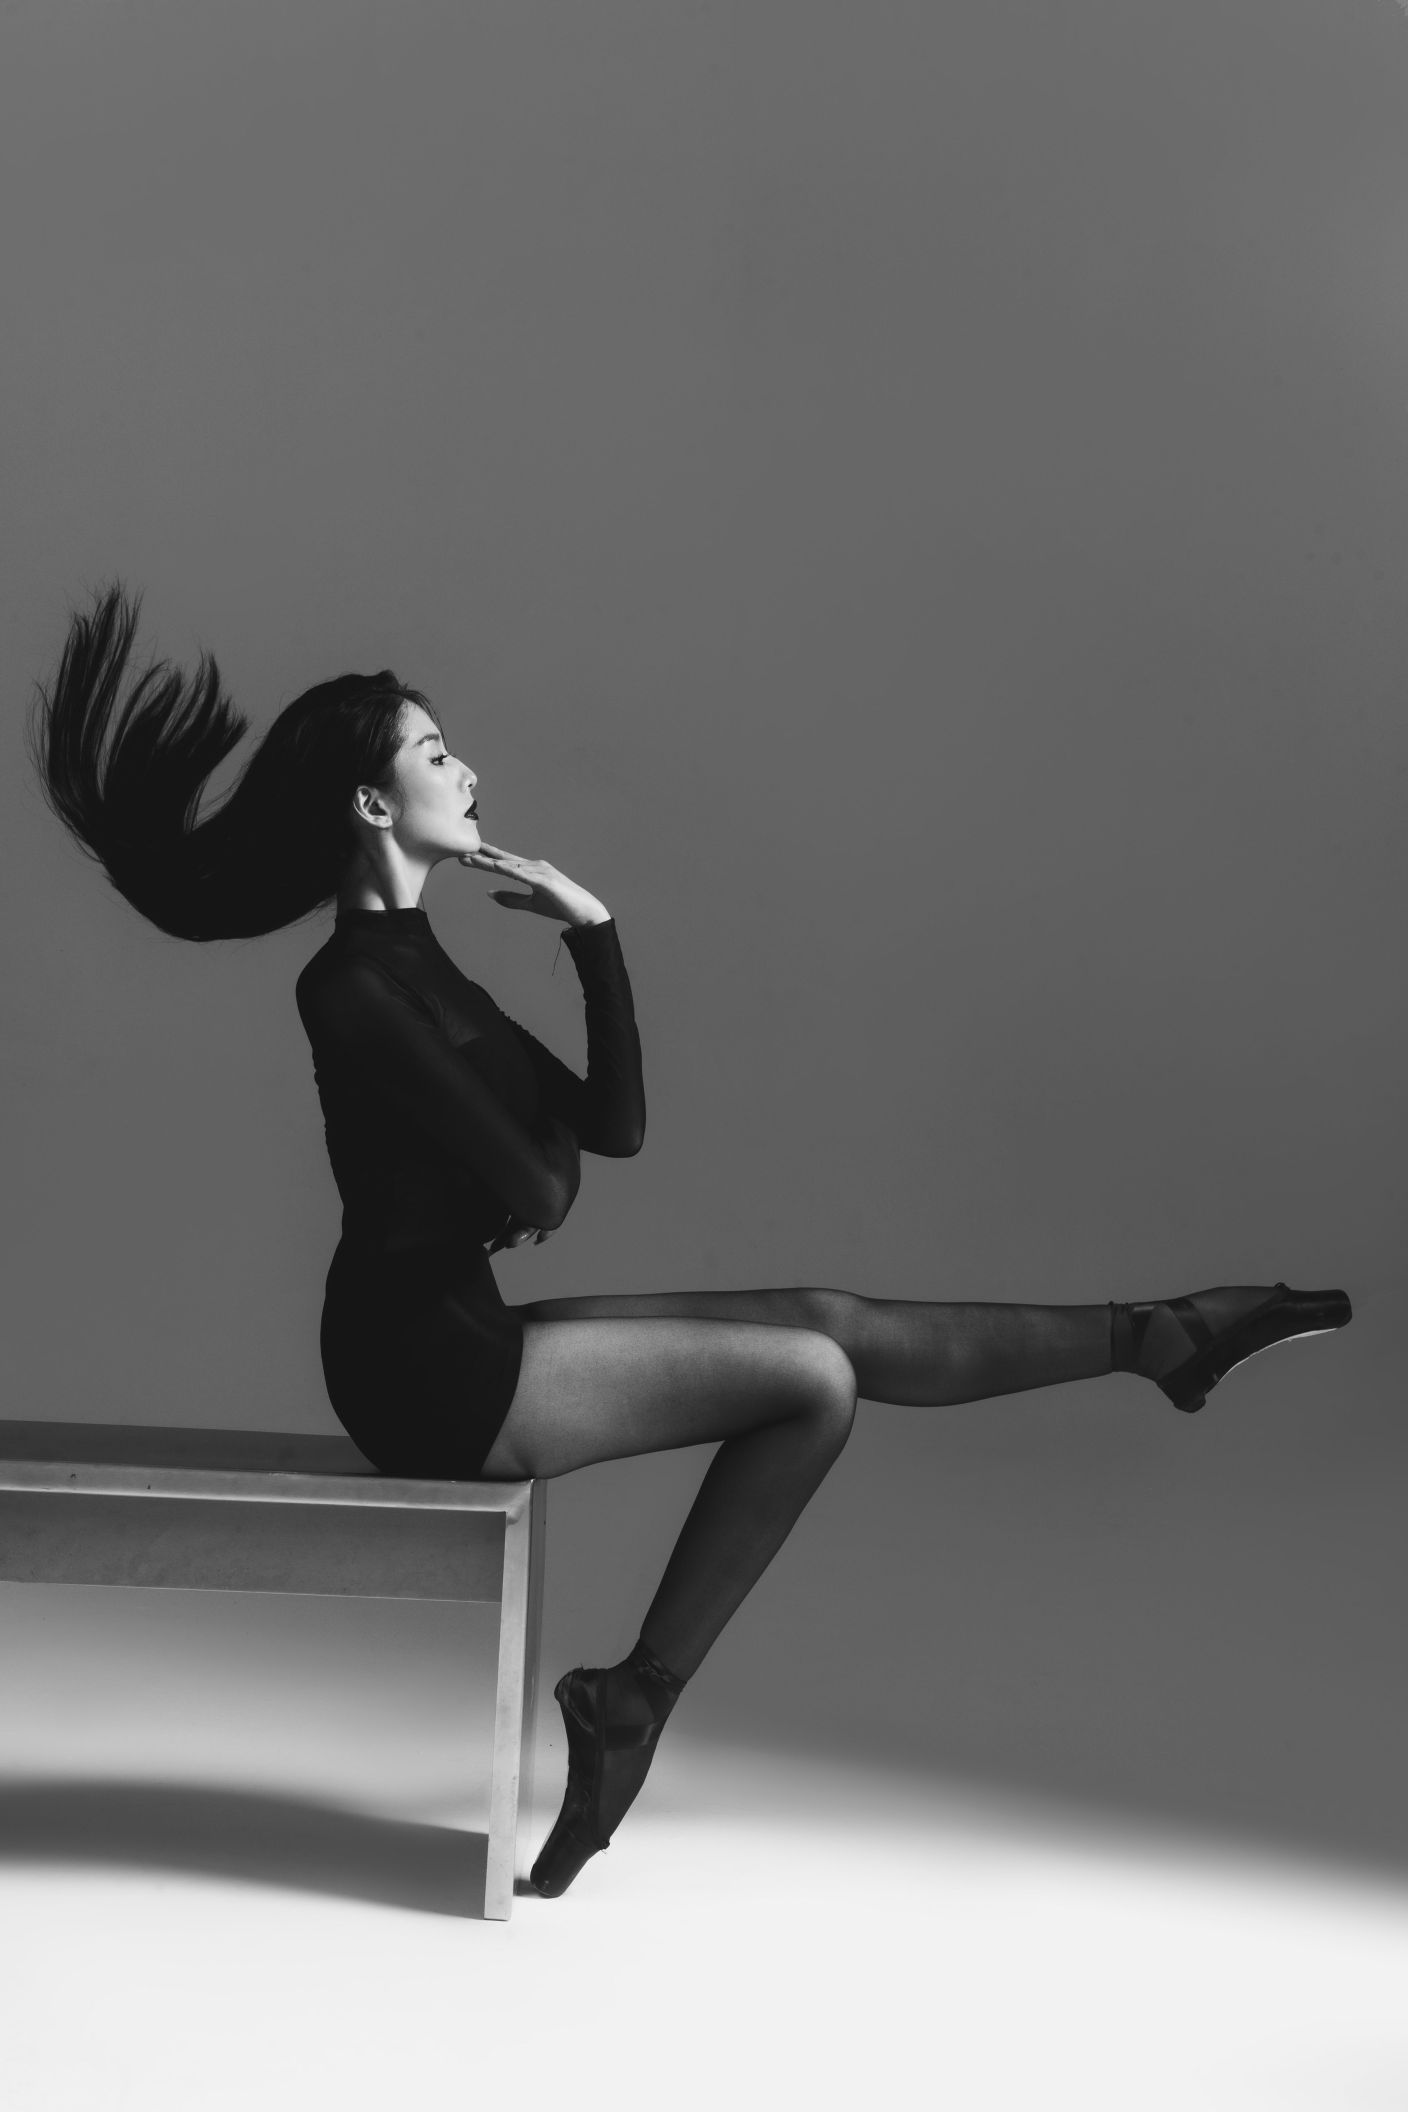 Ngọc Ánh 5 “Nữ hoàng lookbook miền Bắc” Ngọc Ánh tung bộ ảnh ballet pose dáng độc đáo